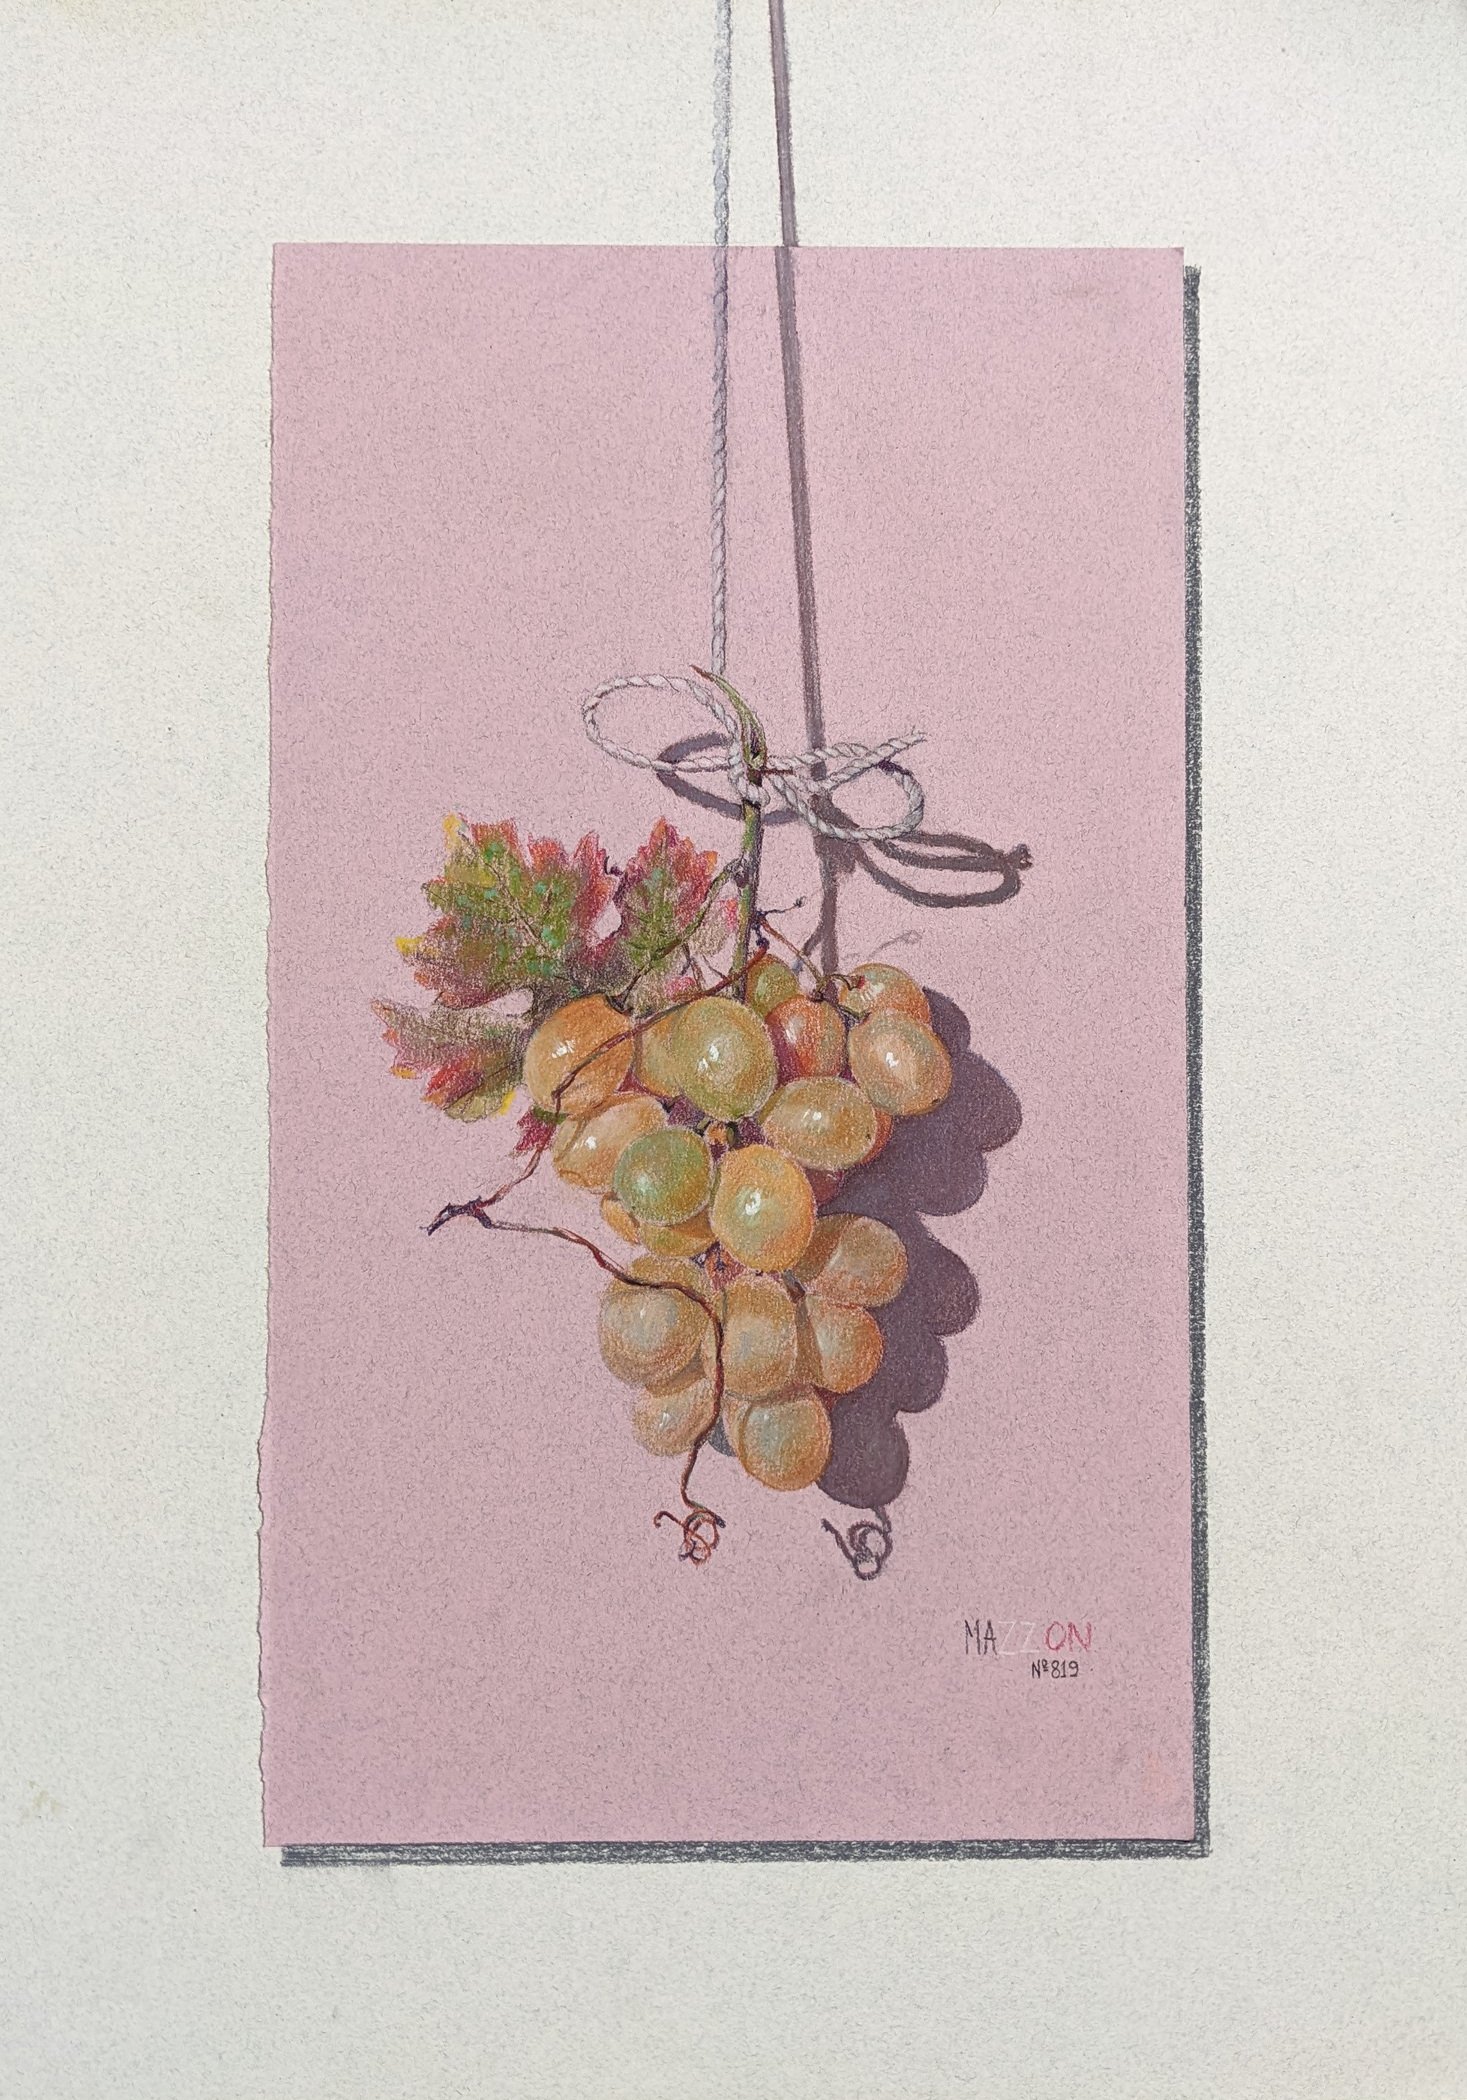 California Grapes by Massimo Mazzon